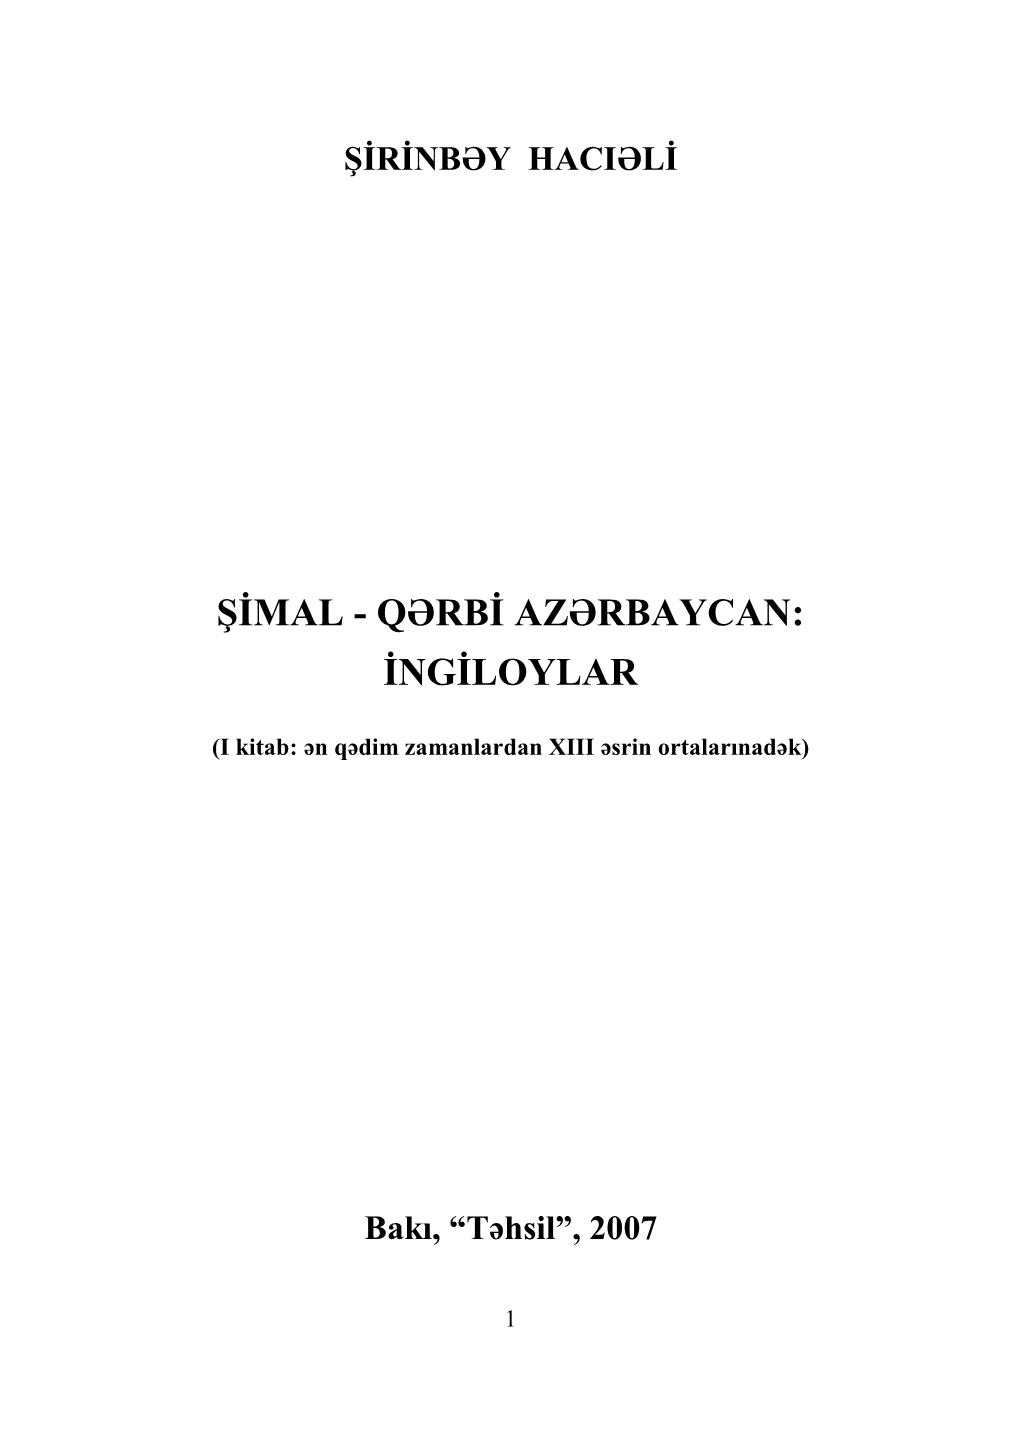 Şimal - Qərbi Azərbaycan: Ingiloylar